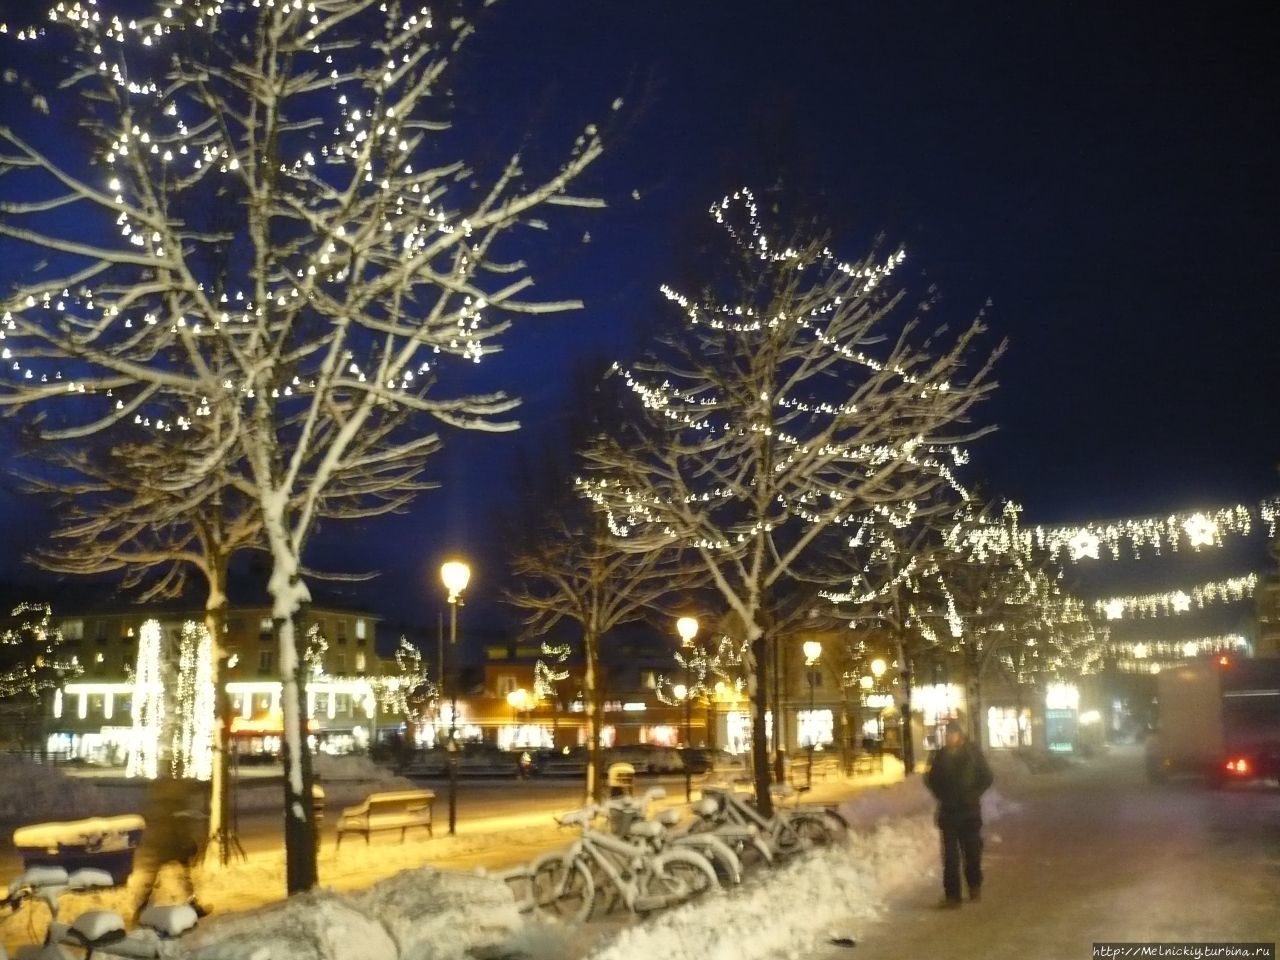 Вечерняя прогулка по Энчёпингу Энчёпинг, Швеция